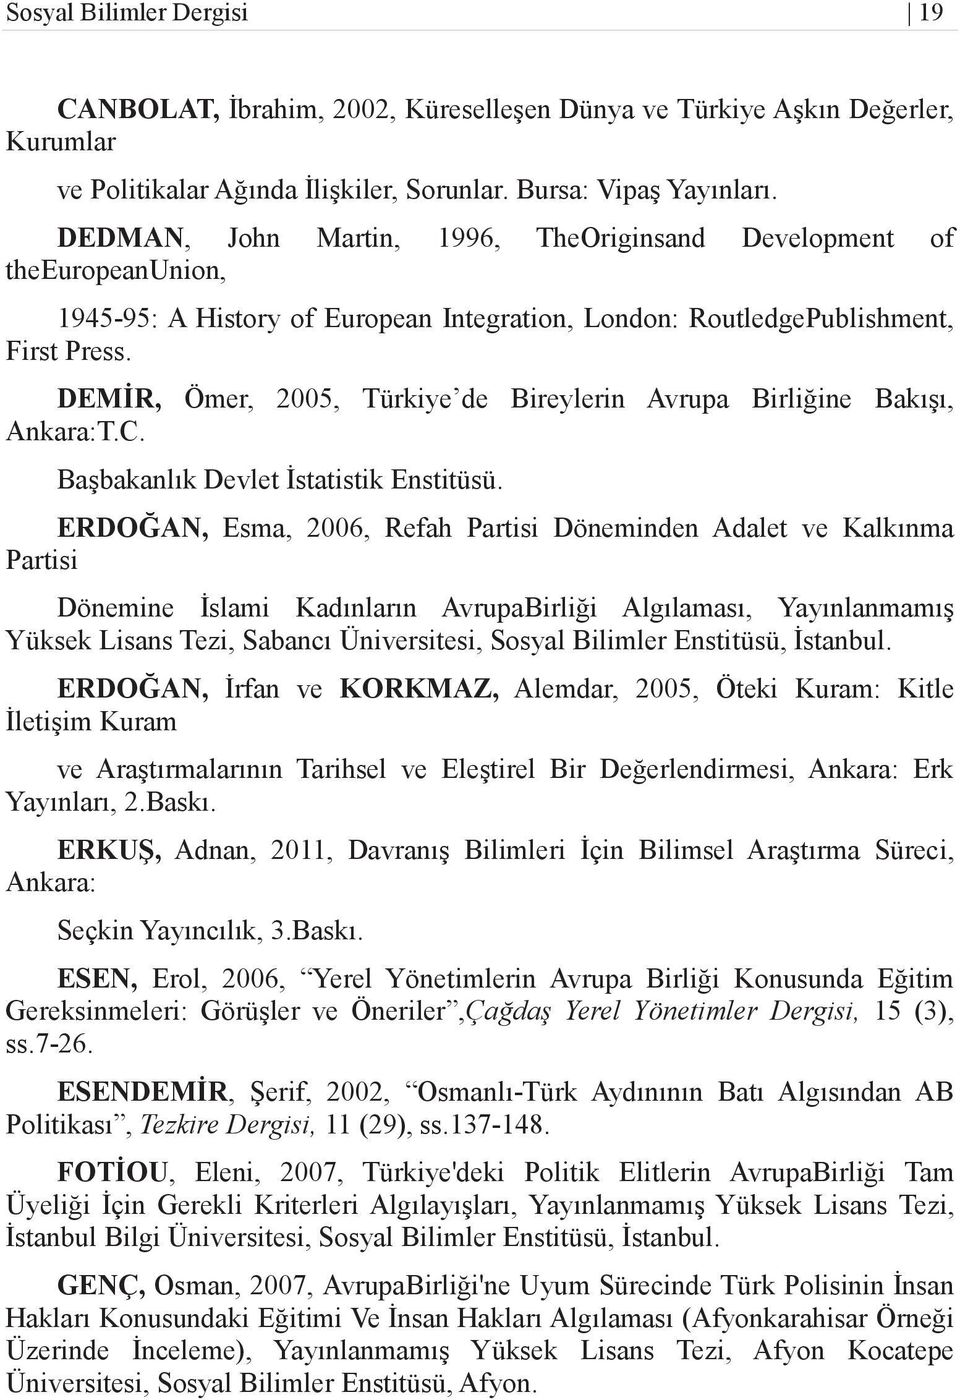 DEMİR, Ömer, 2005, Türkiye de Bireylerin Avrupa Birliğine Bakışı, Ankara:T.C. Başbakanlık Devlet İstatistik Enstitüsü.